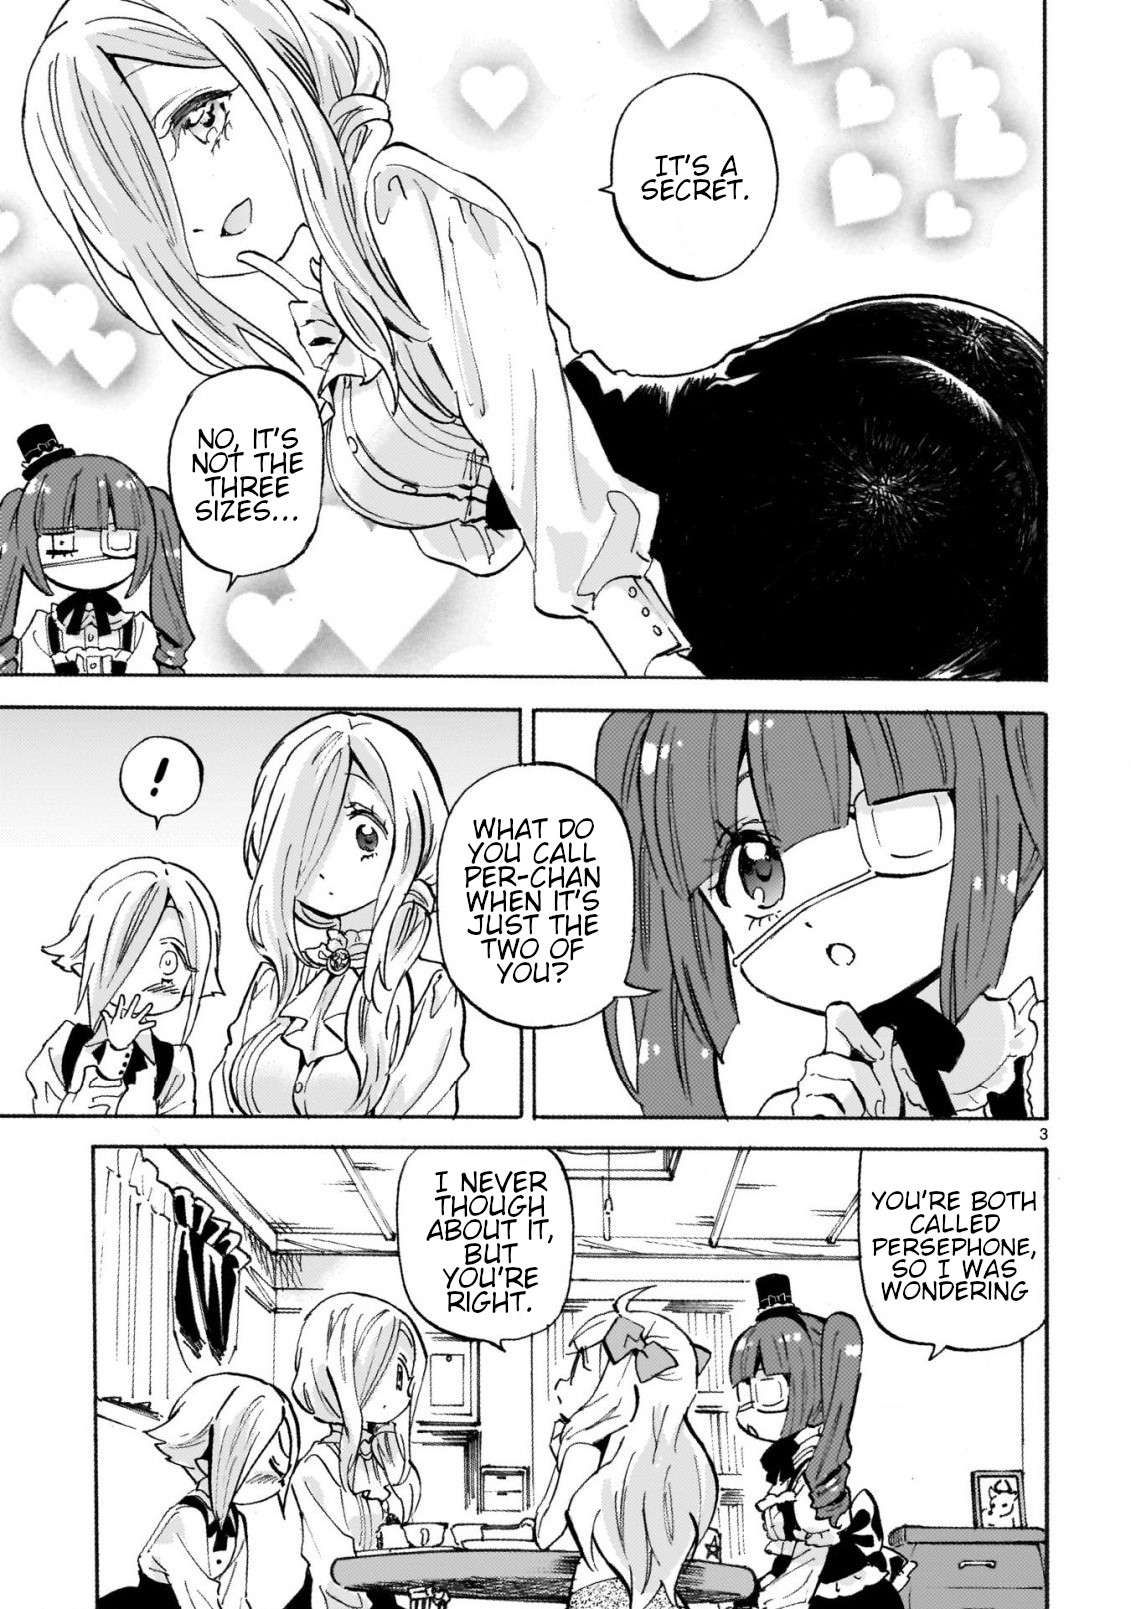 Jashin-chan Dropkick chapter 247 page 3